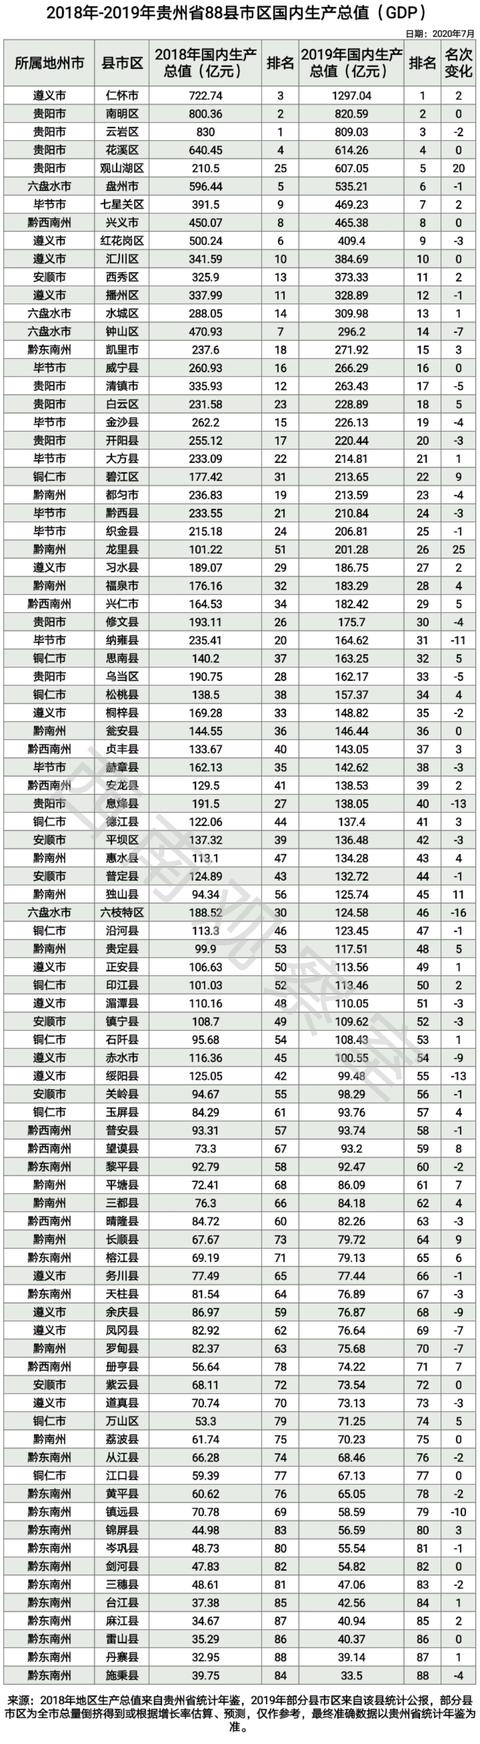 最新贵州省88县市区GDP出炉（含估算预测）